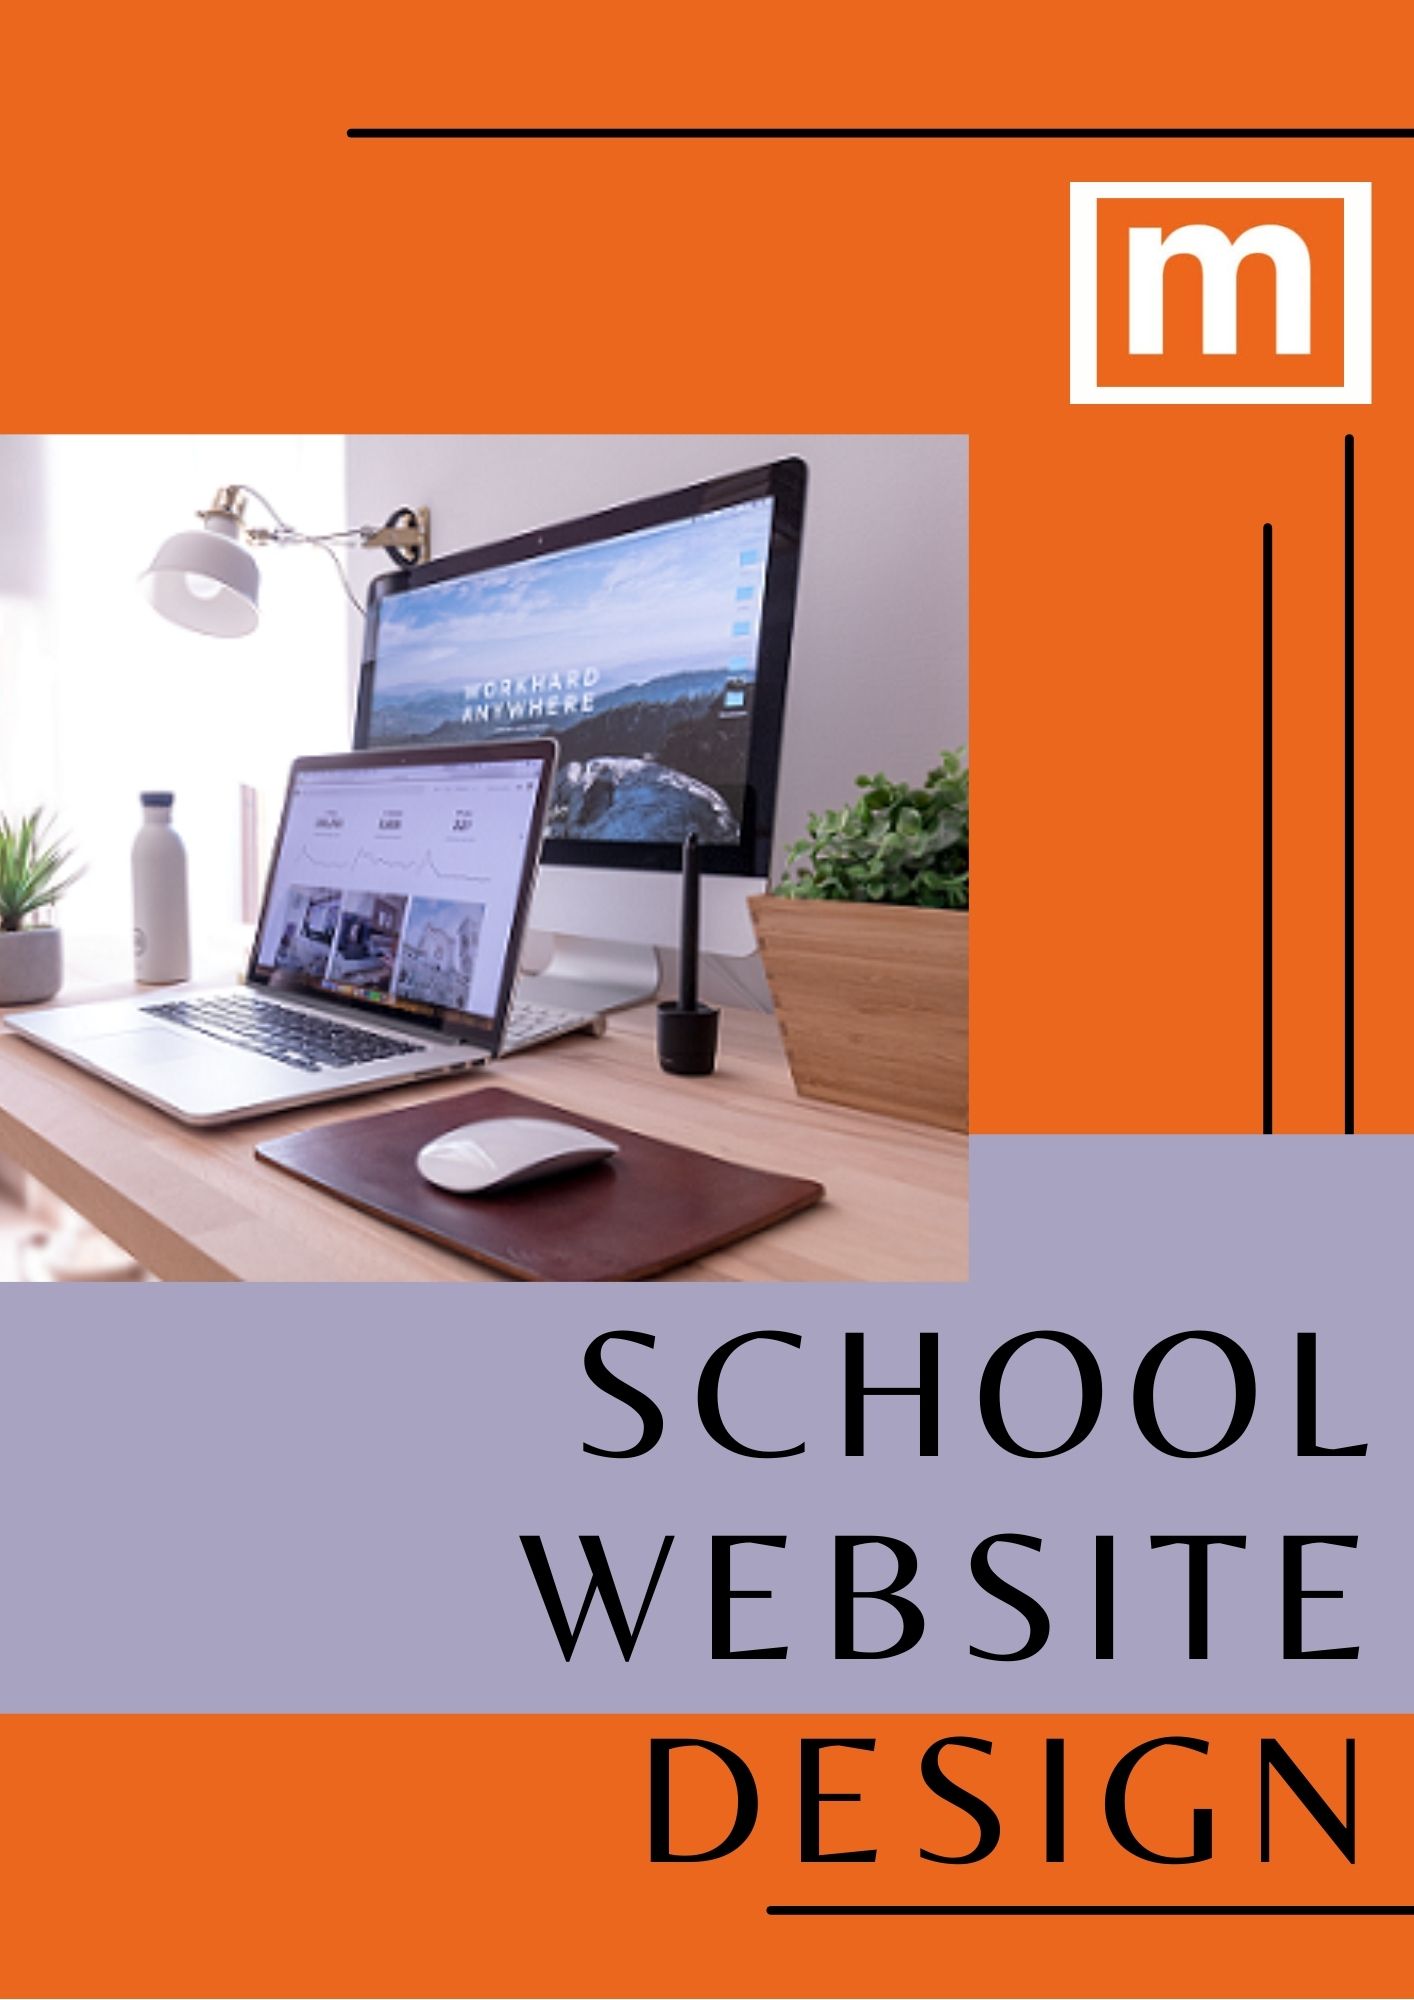 School website design 3.jpg